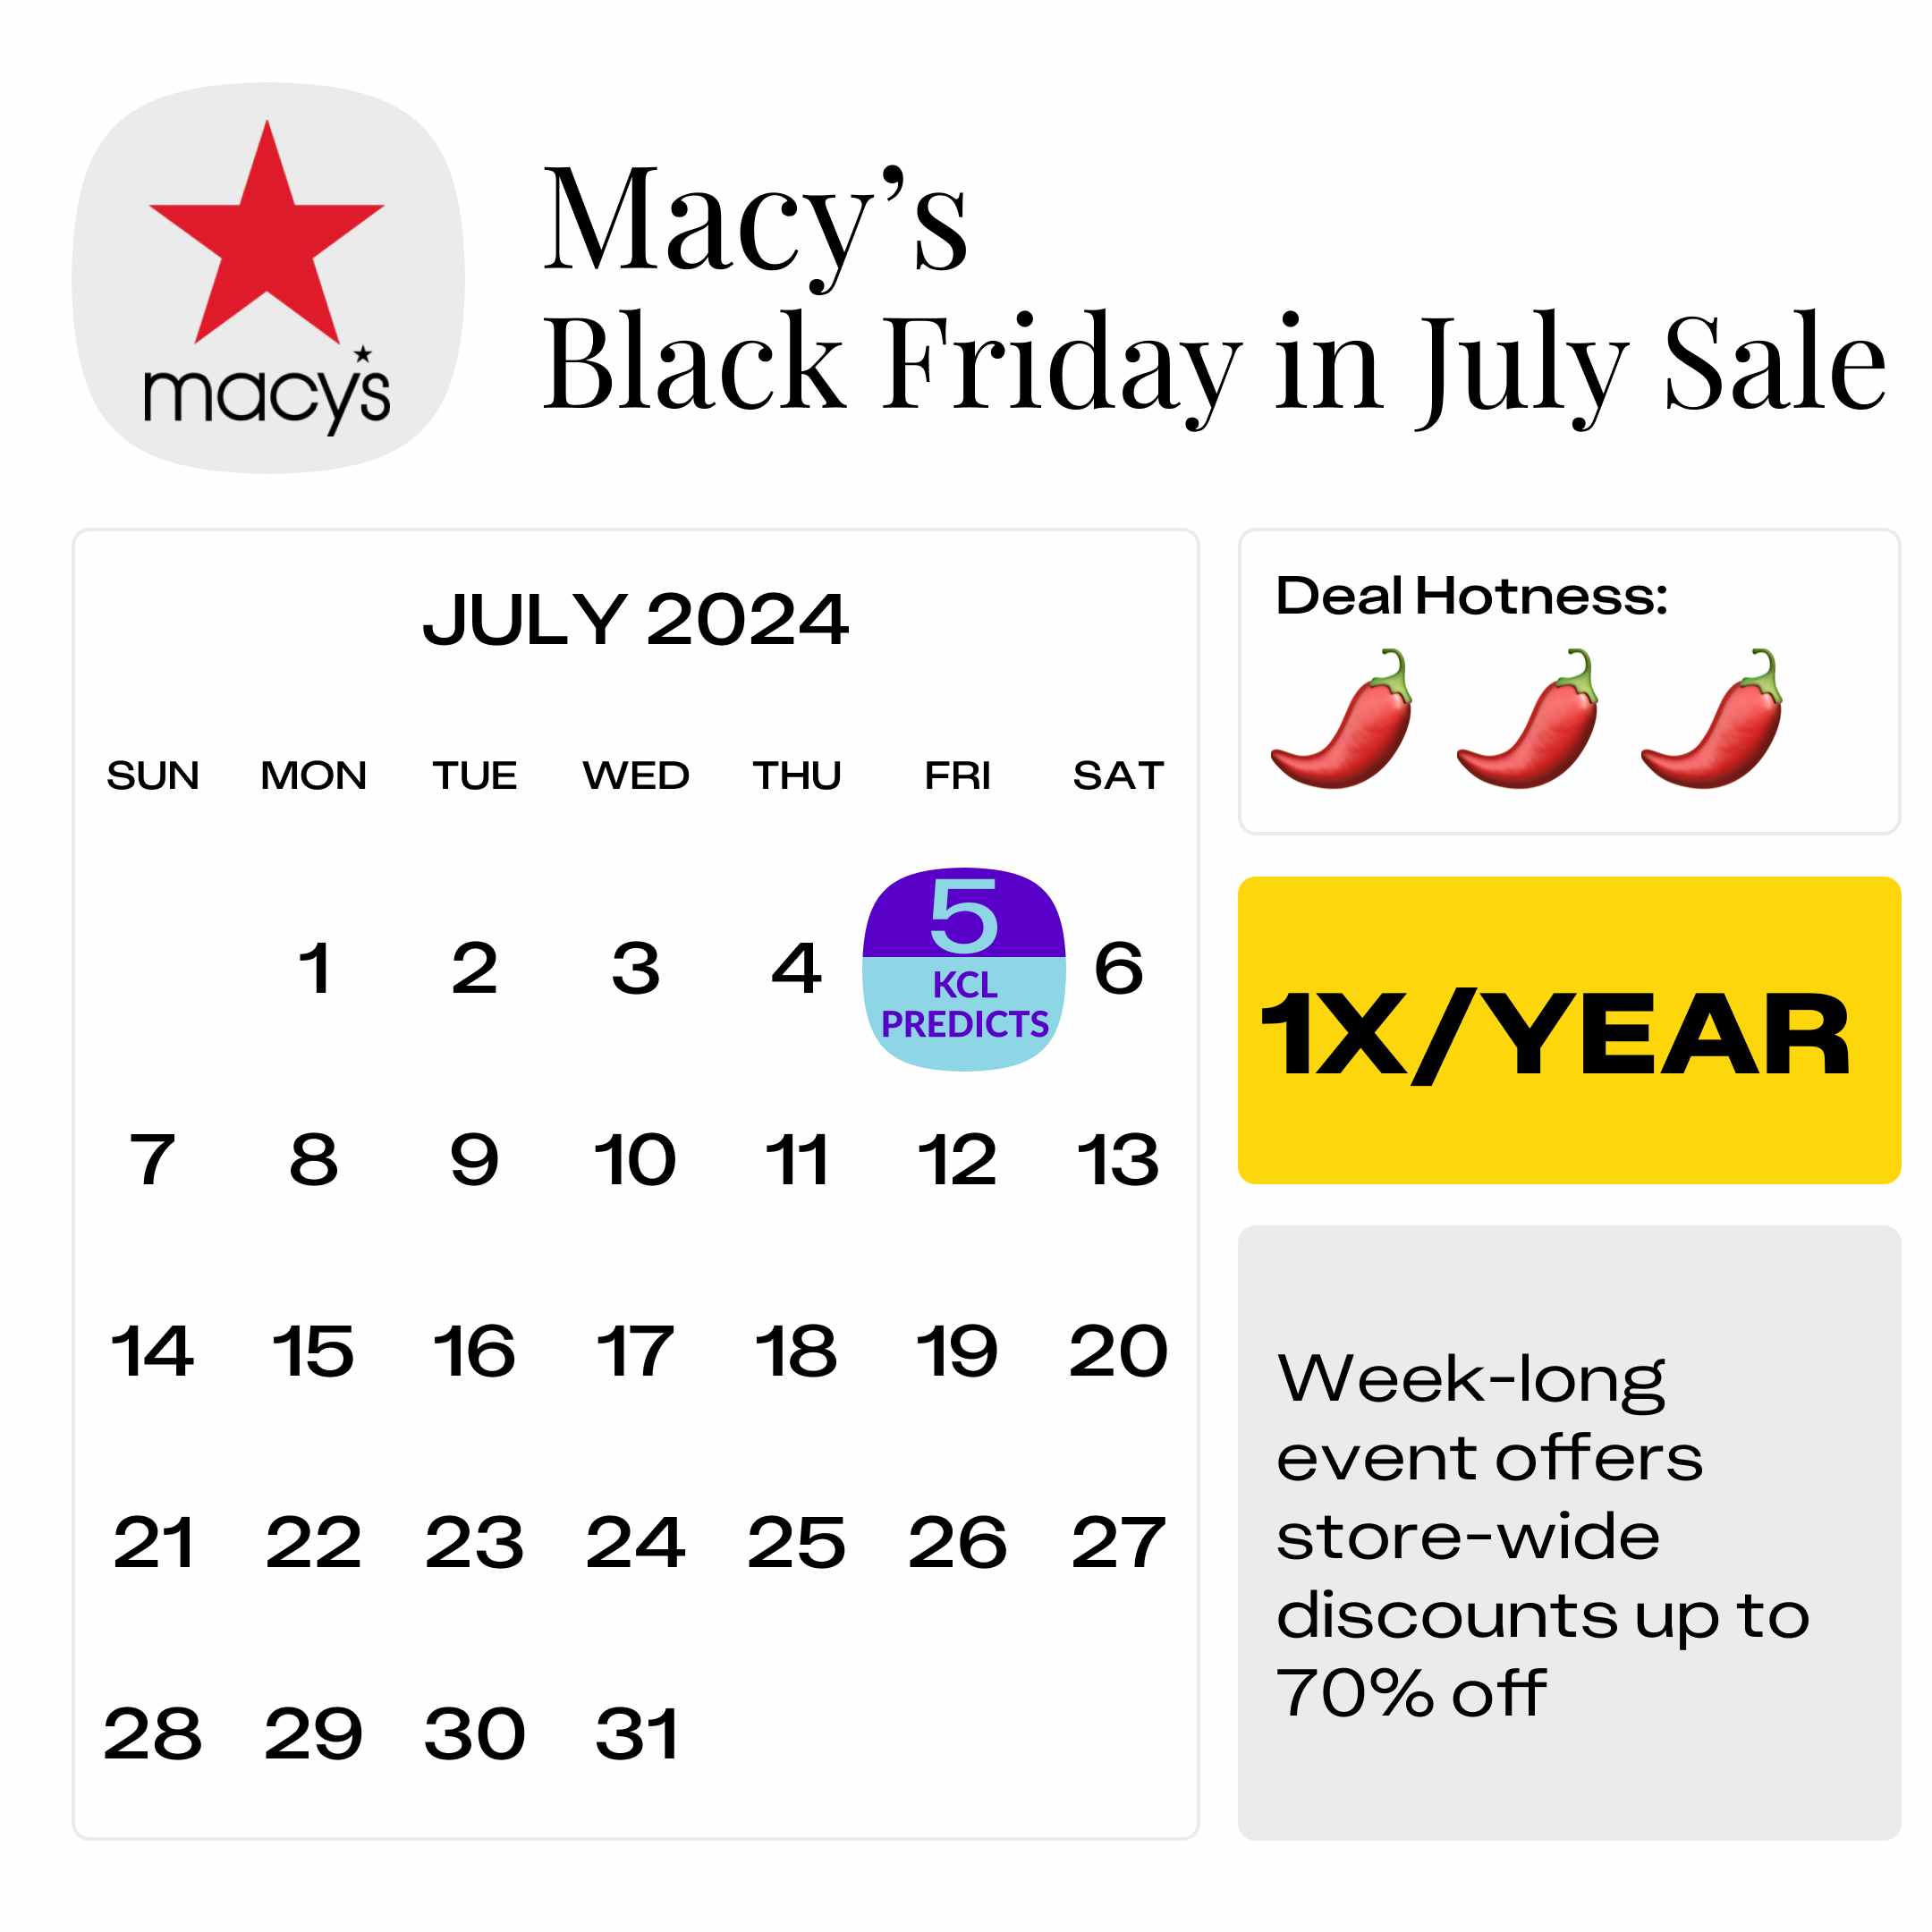 Macys-Black-Friday-in-July-Sale